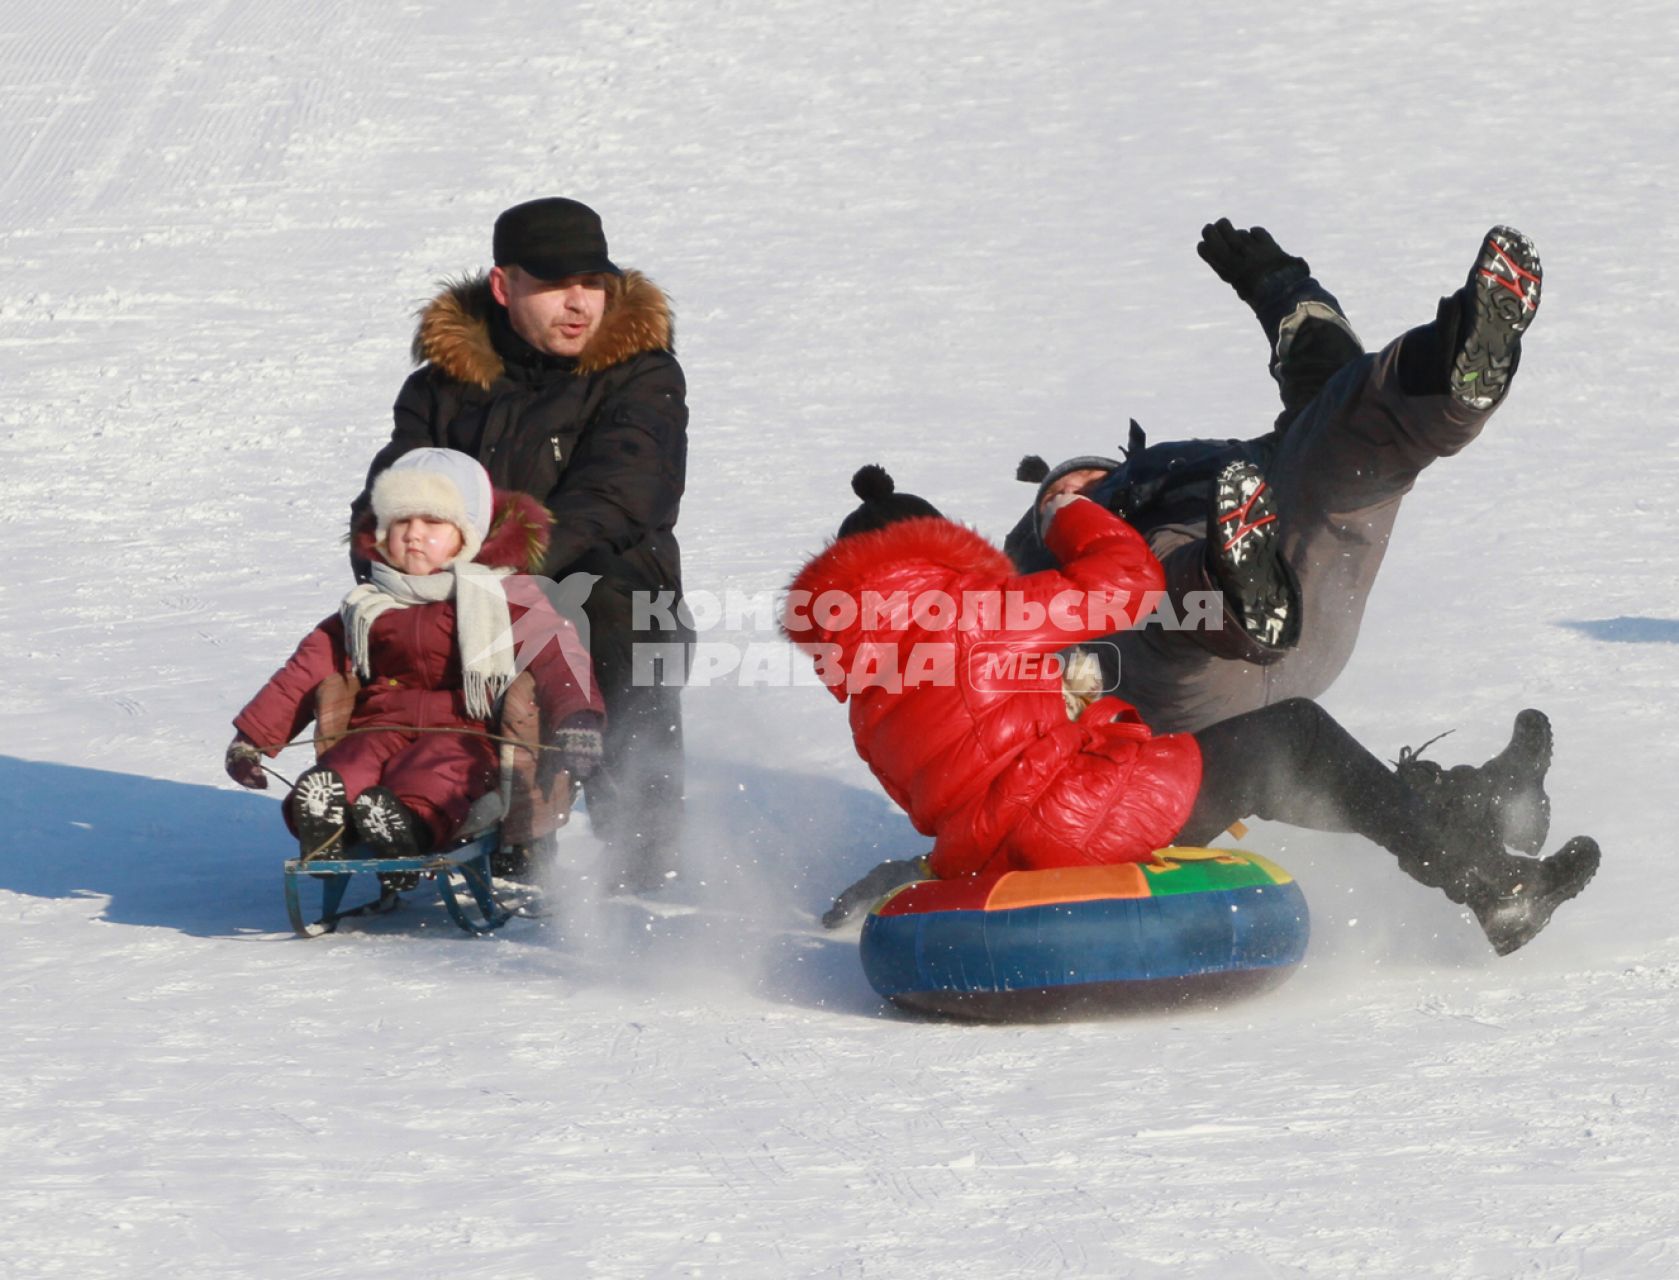 Девочка на тюбинге катаясь со снежной горки сбивает стоявшего мужчину. Рядом едет ребенок на санках, которого держит мужчина.